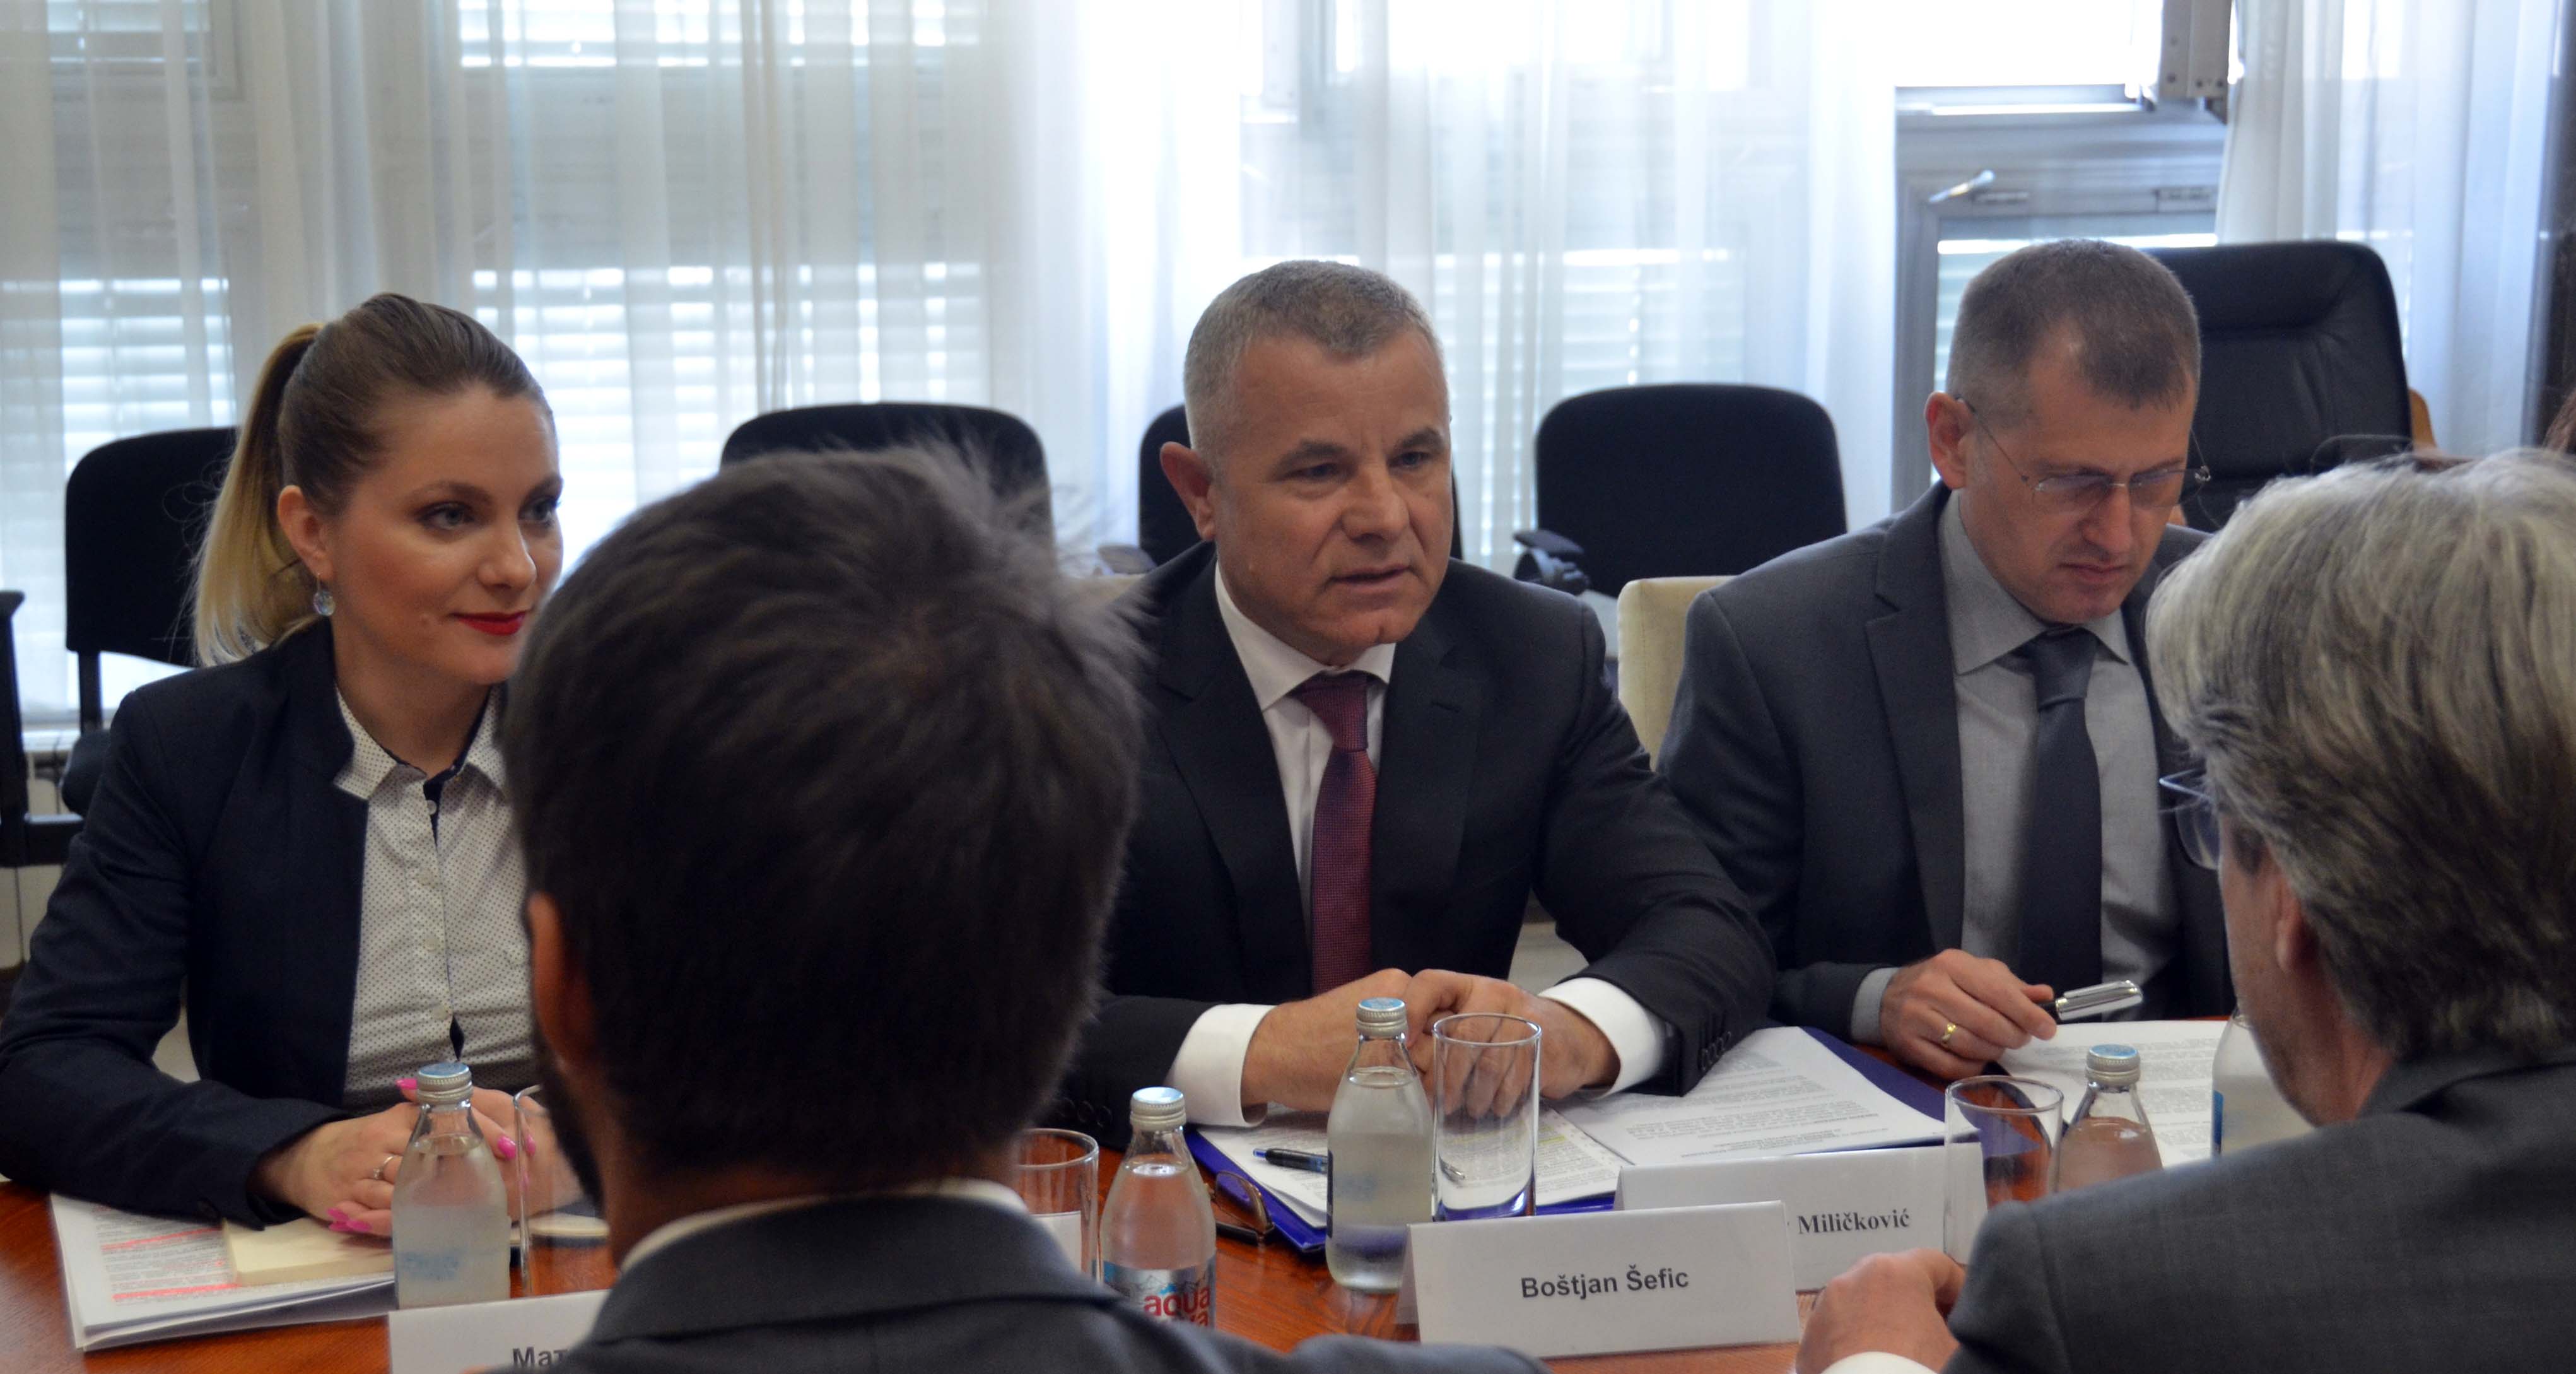 Миличковић и Ребић састали се са државним секретаром МУП-а Словеније Боштјаном Шефицом